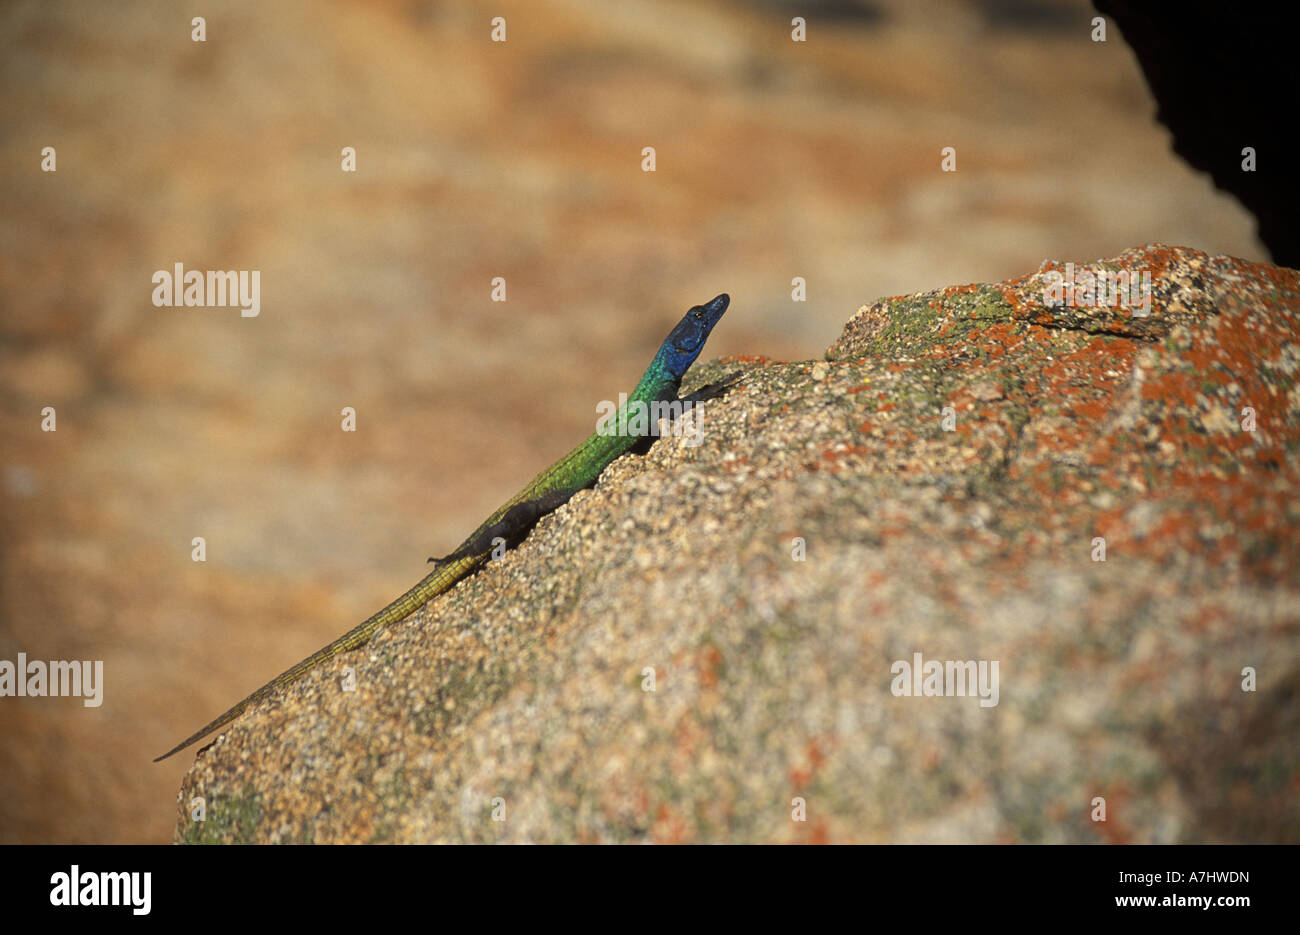 Common flat lizard Platysaurus intermedius Matobo National Park Zimbabwe Stock Photo